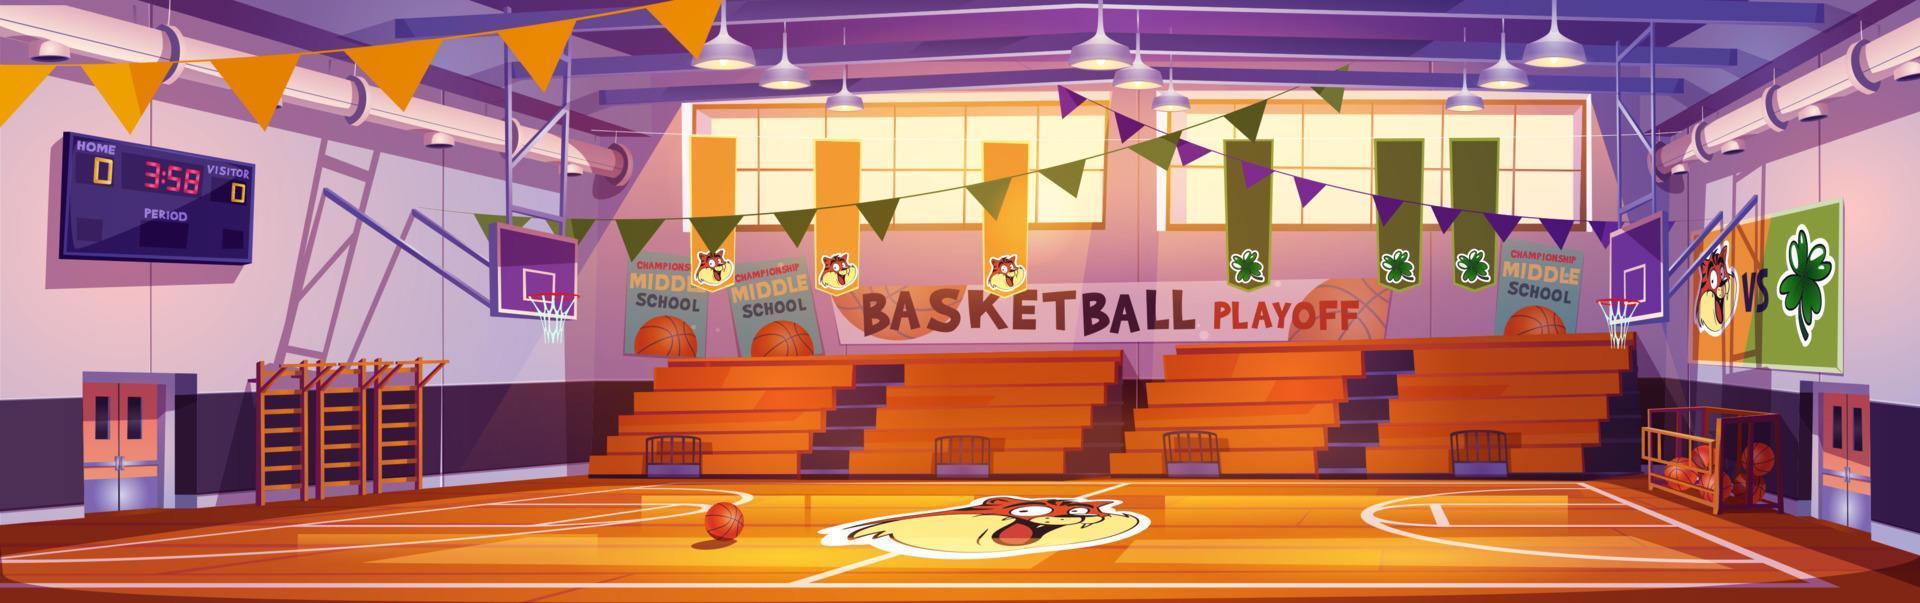 interior da quadra de basquete, arena de esportes da escola vetor